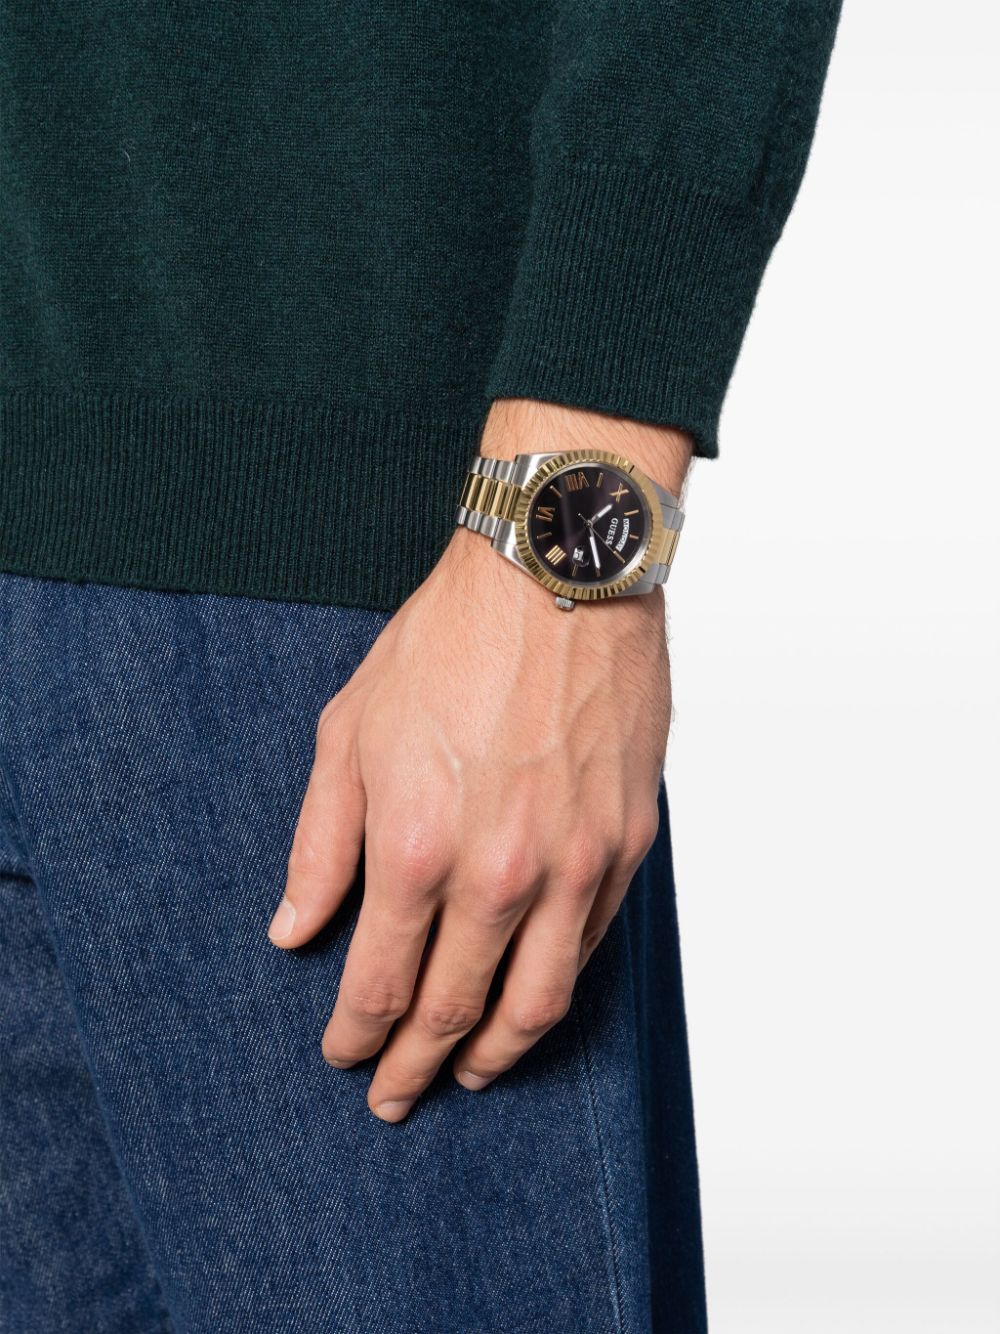 GUESS Watches Connoisseur Quartz - Farfetch 44mm